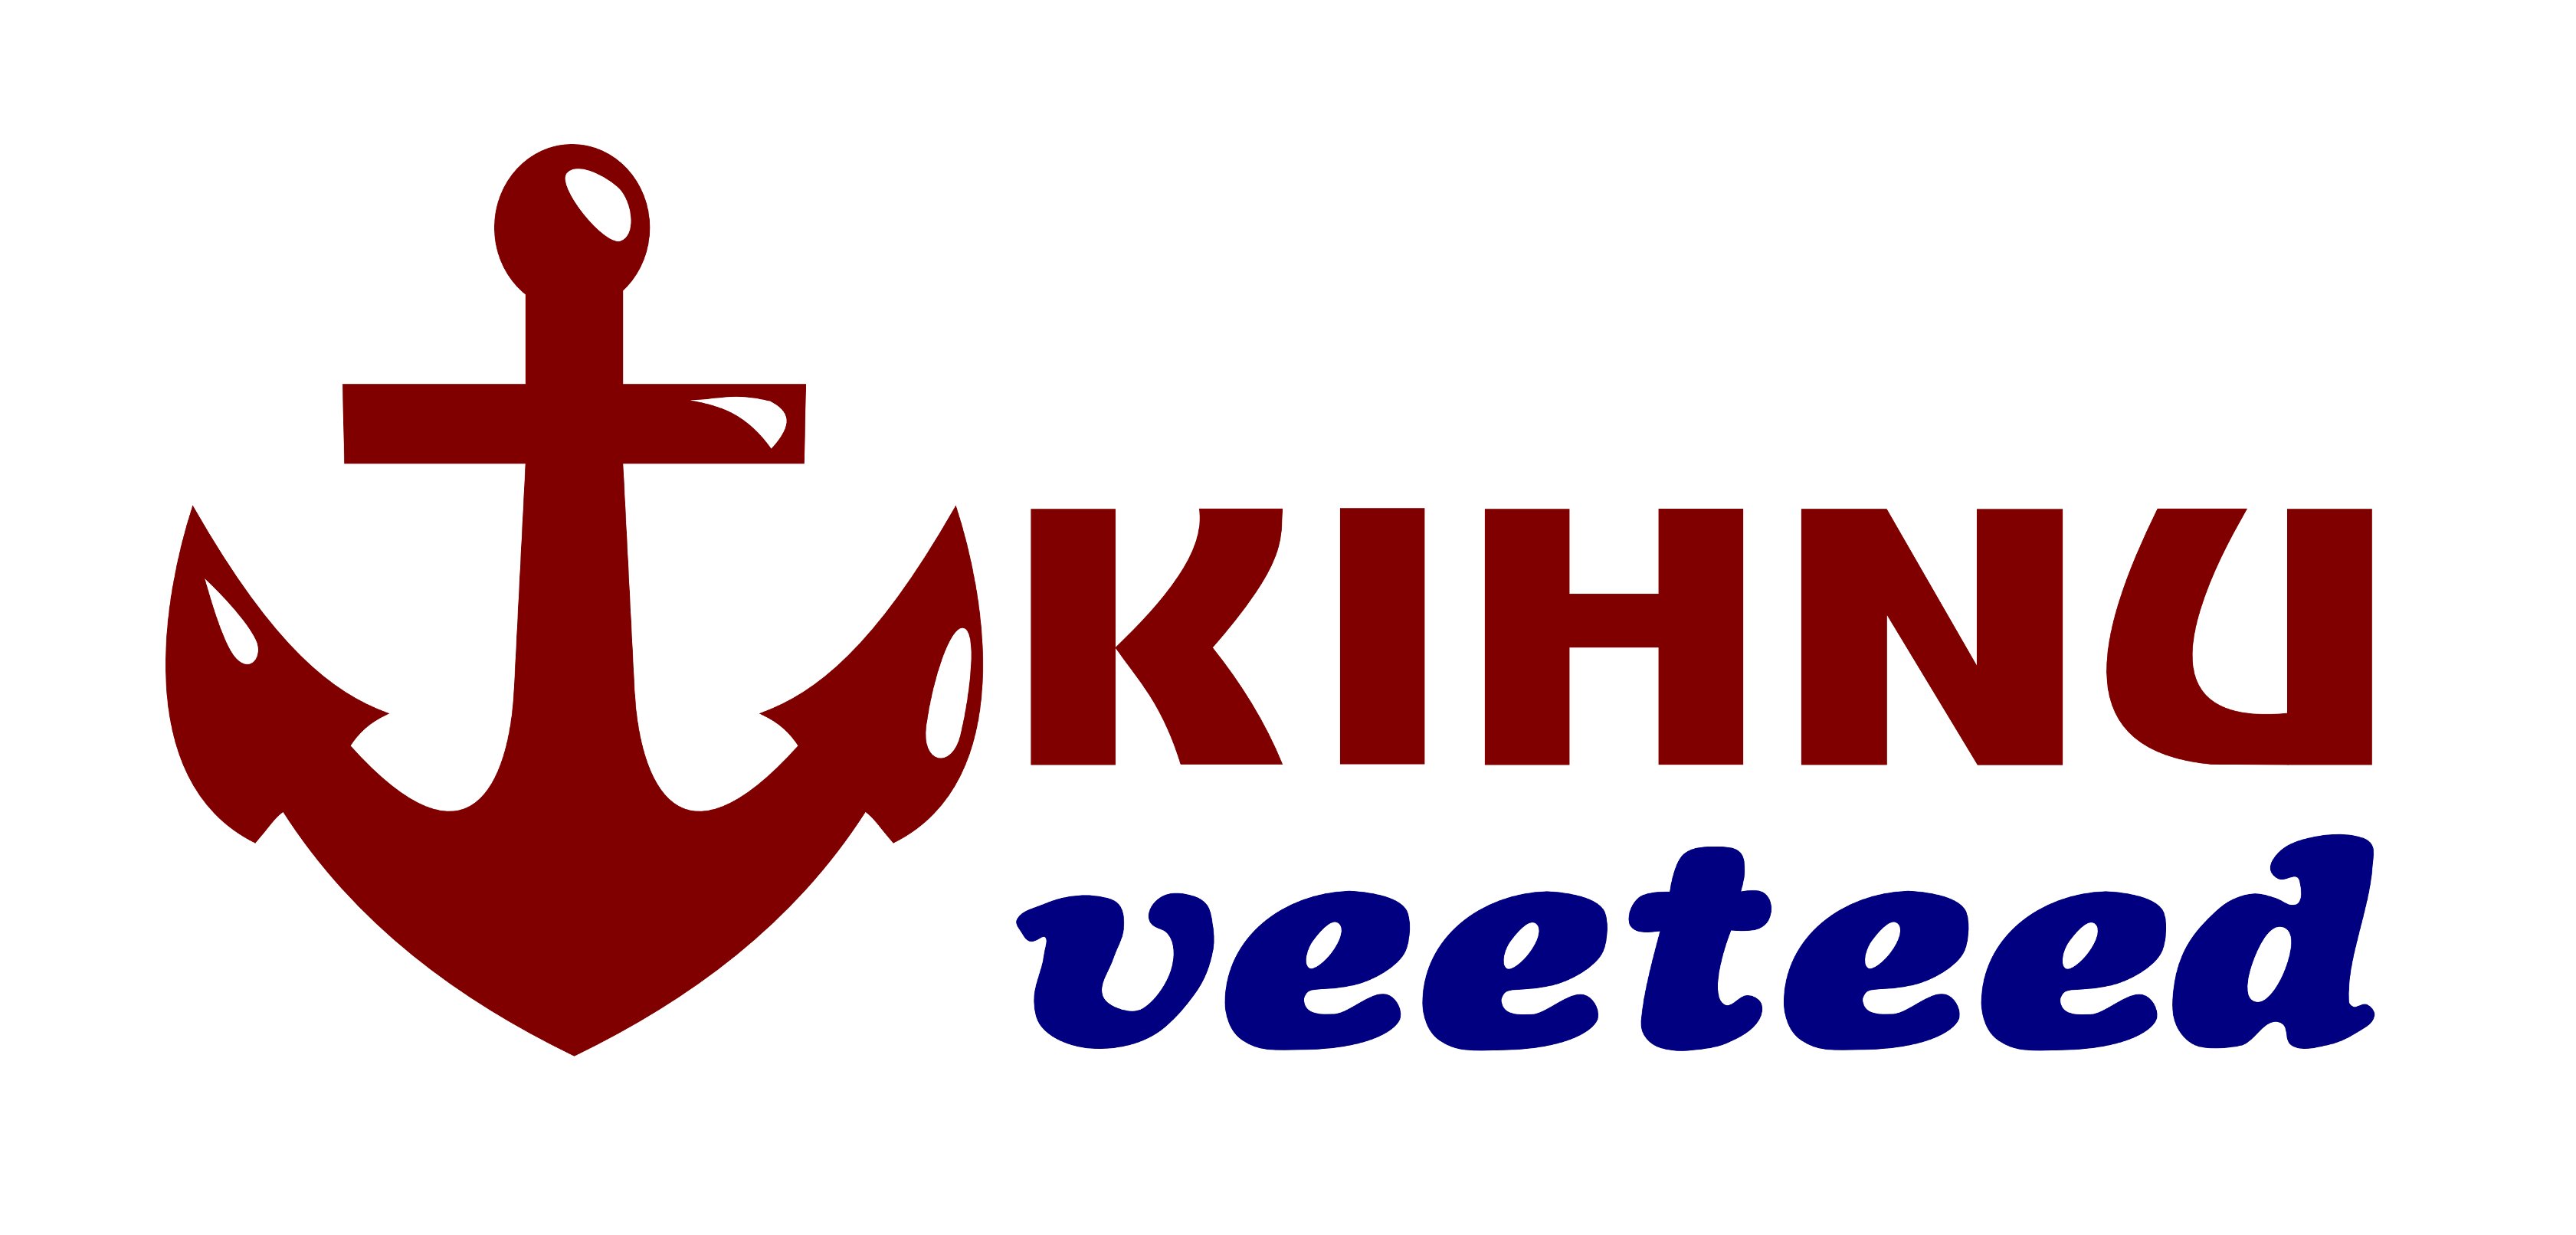 Kihnu Veeteed 商标